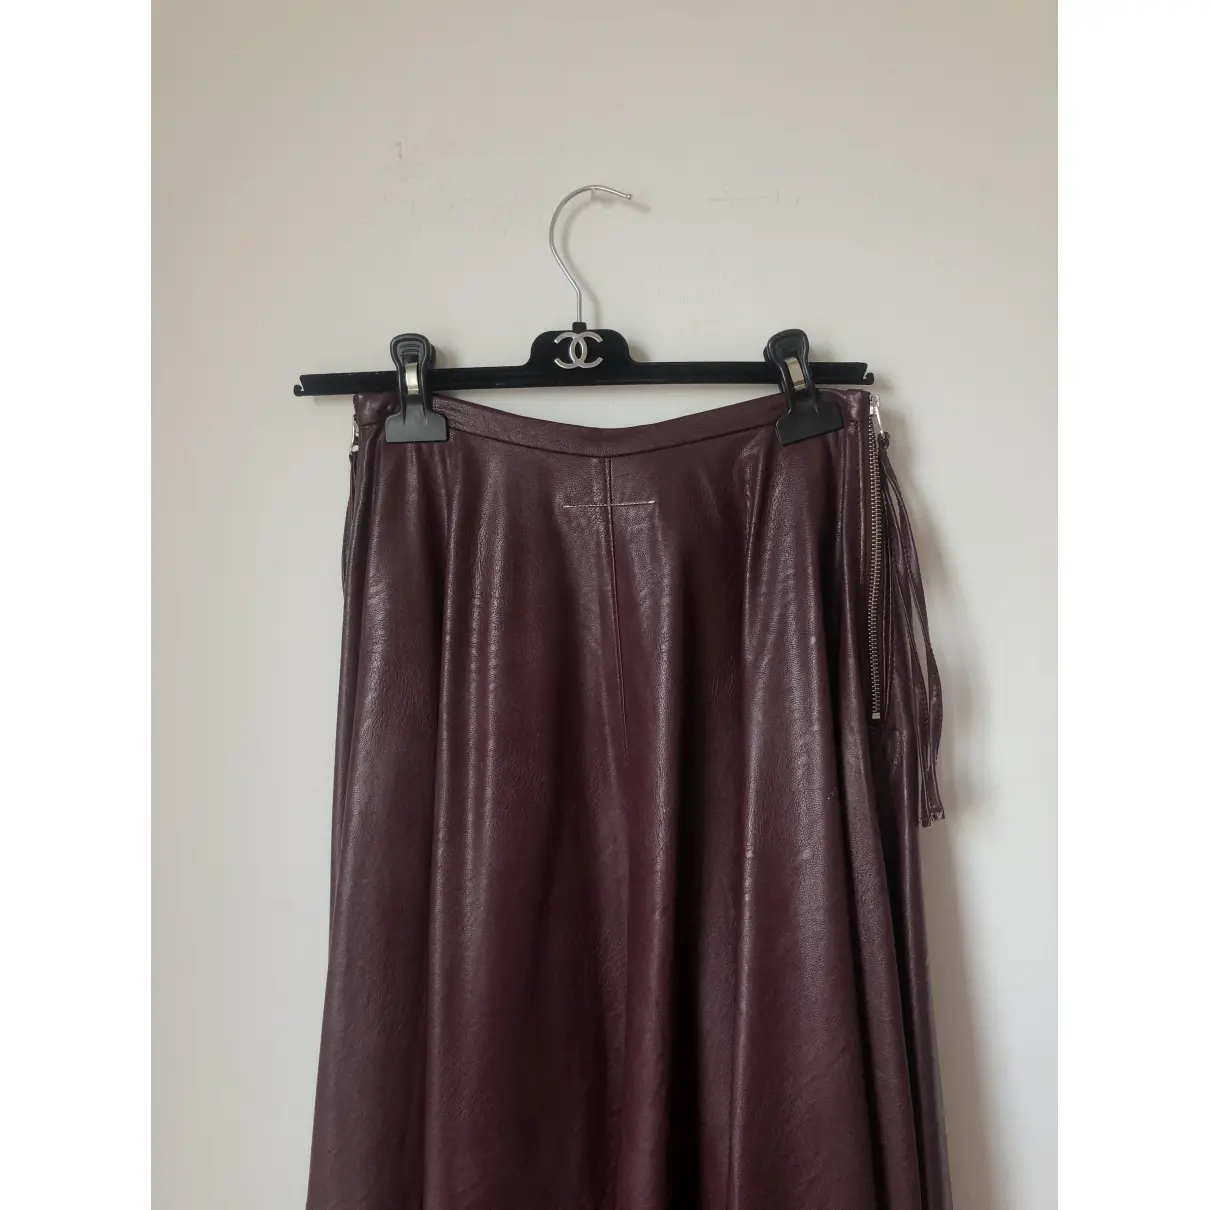 Vegan leather mid-length skirt MM6